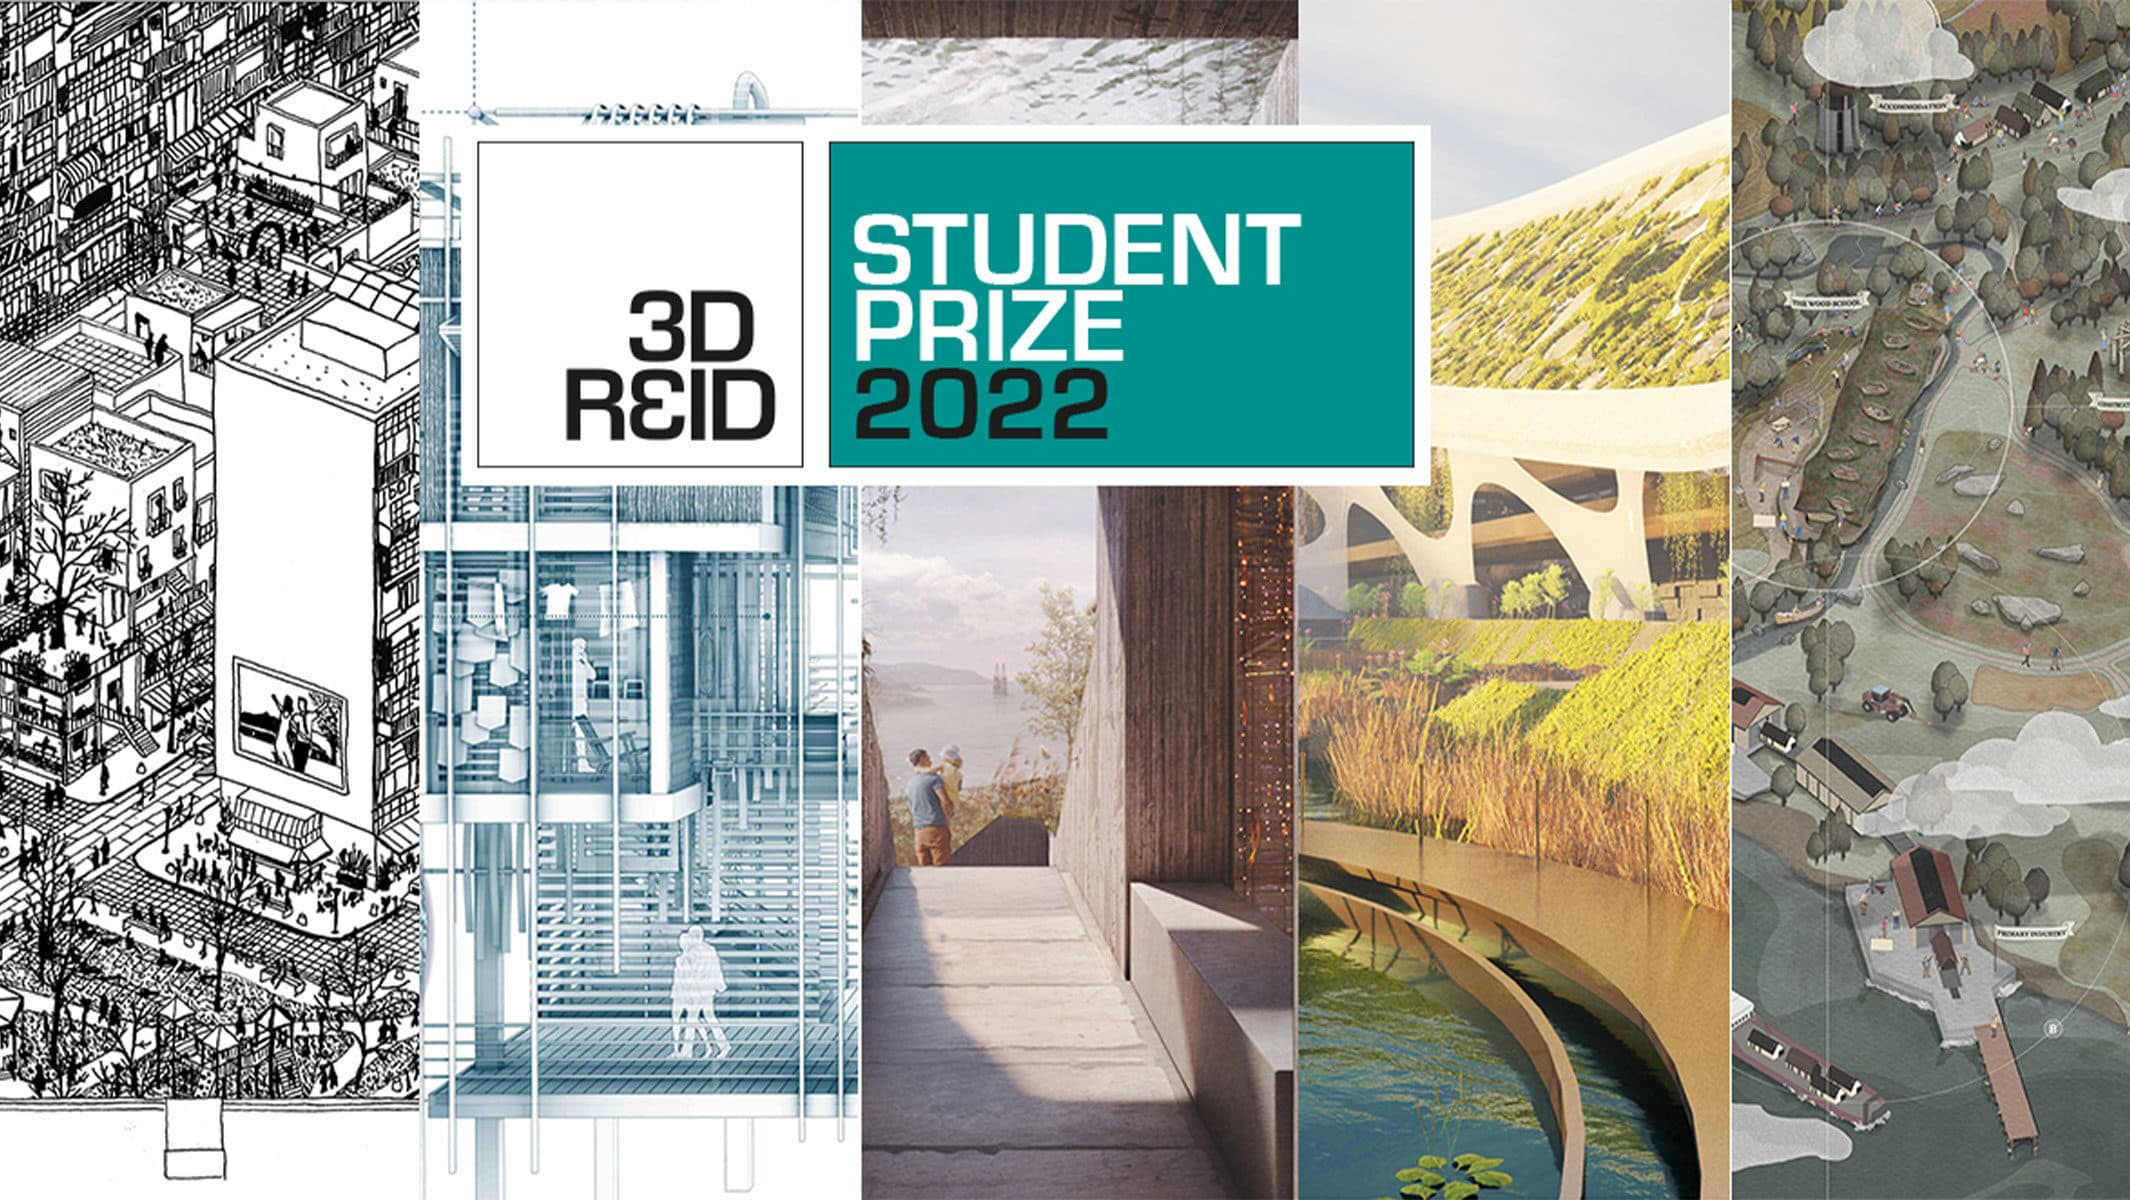 3DReid Student Prize 2022 launches